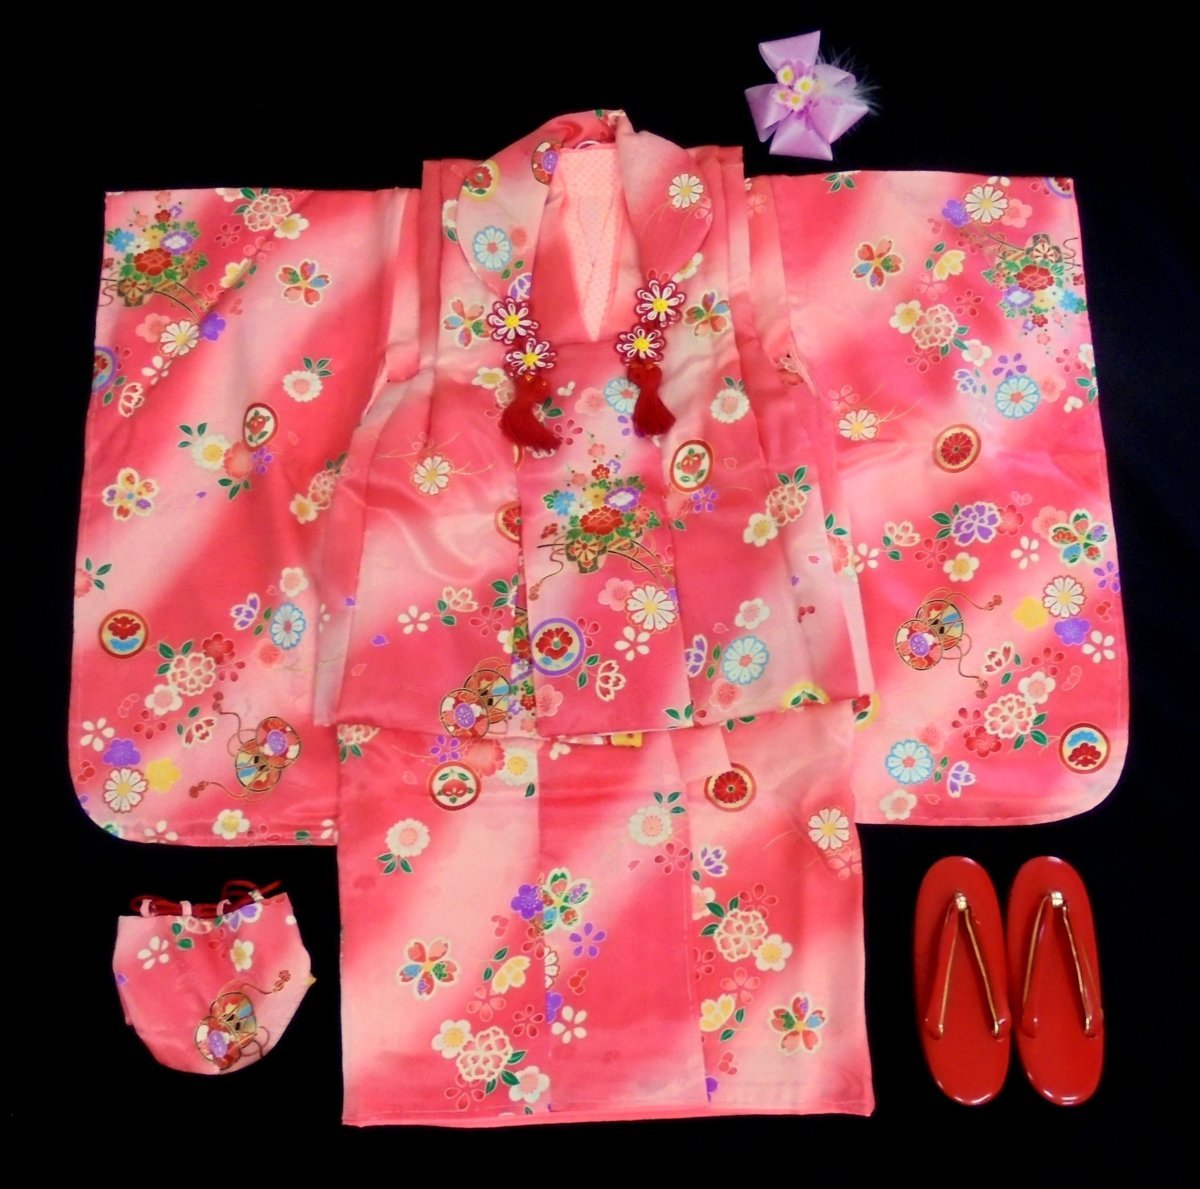 国内初の直営店 5613 七五三 正絹 被布セット 3歳 女の子「赤紅・桜